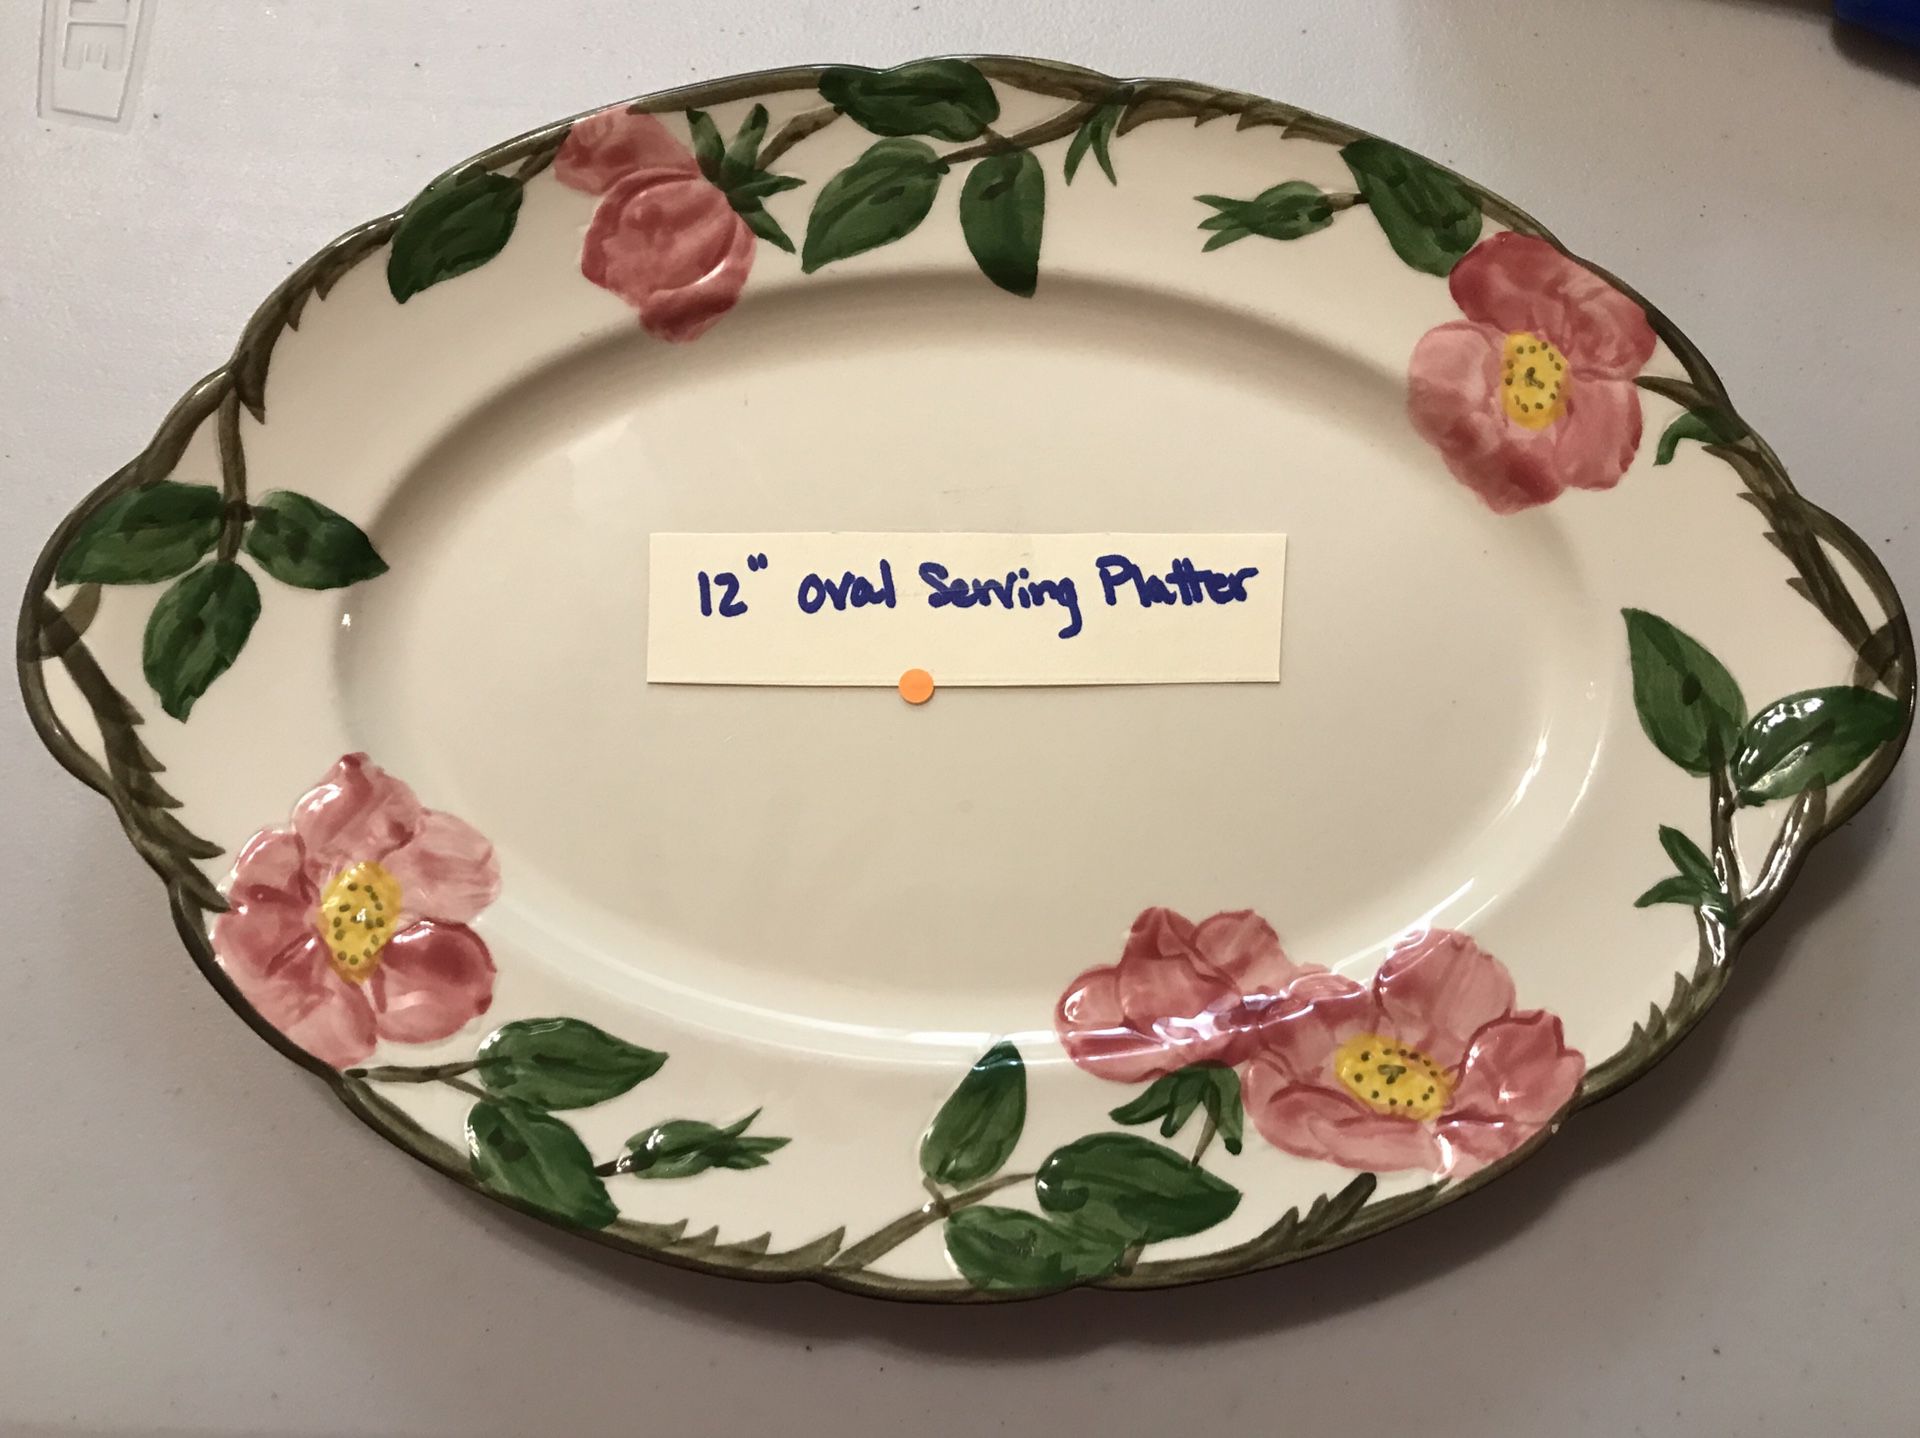 (1) 12” Oval Serving Platter (Desert Rose)